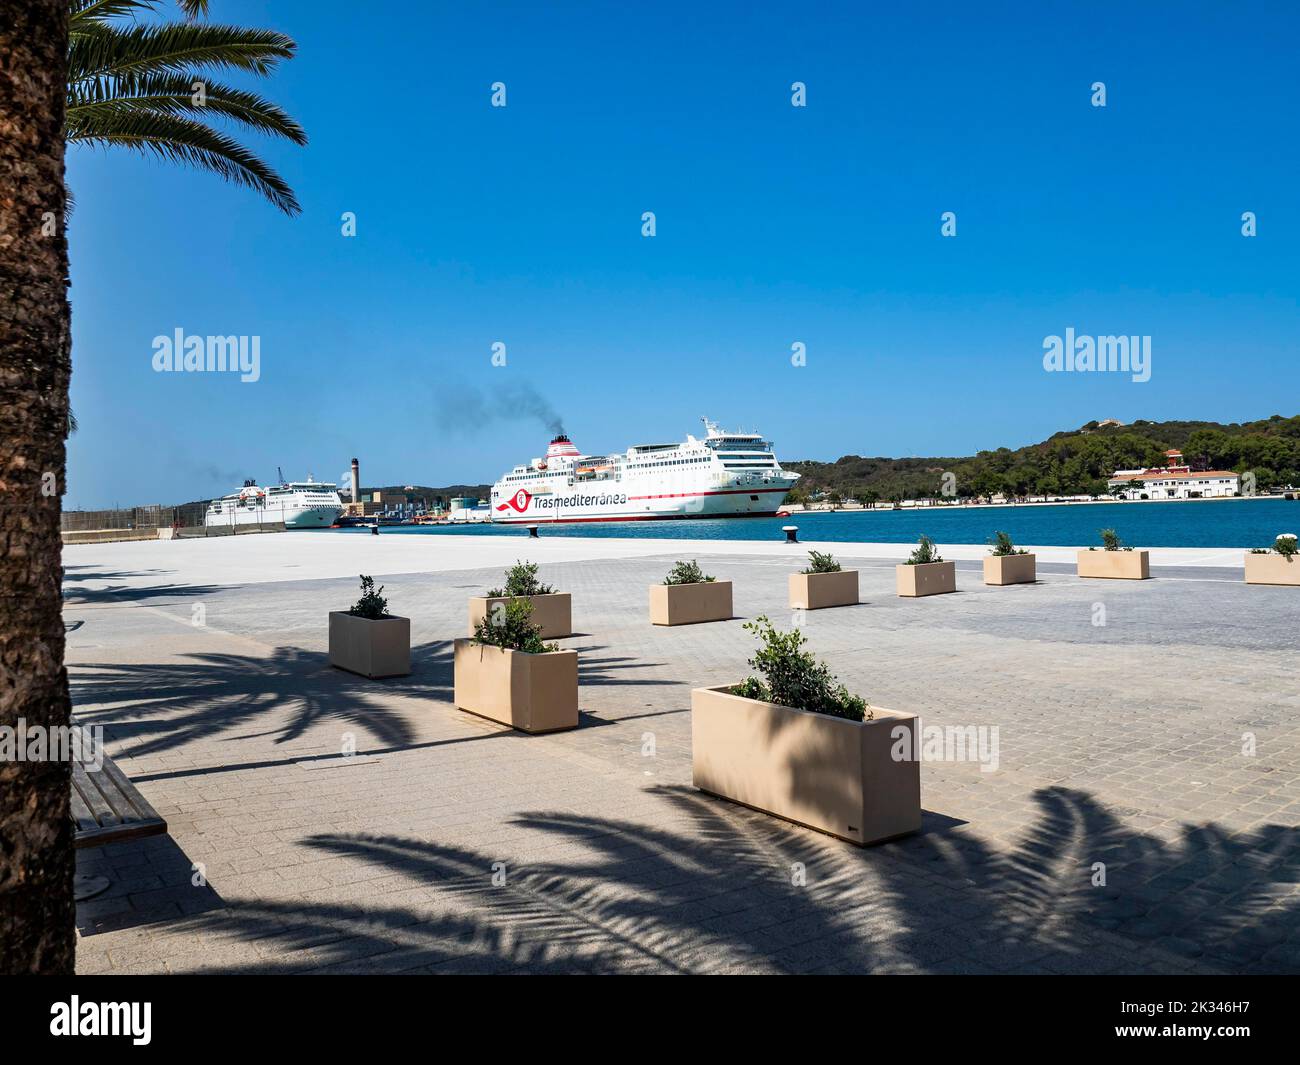 Port de Mao, Yacht à voile, Mahon, Minorque, Iles Baléares, Espagne Banque D'Images